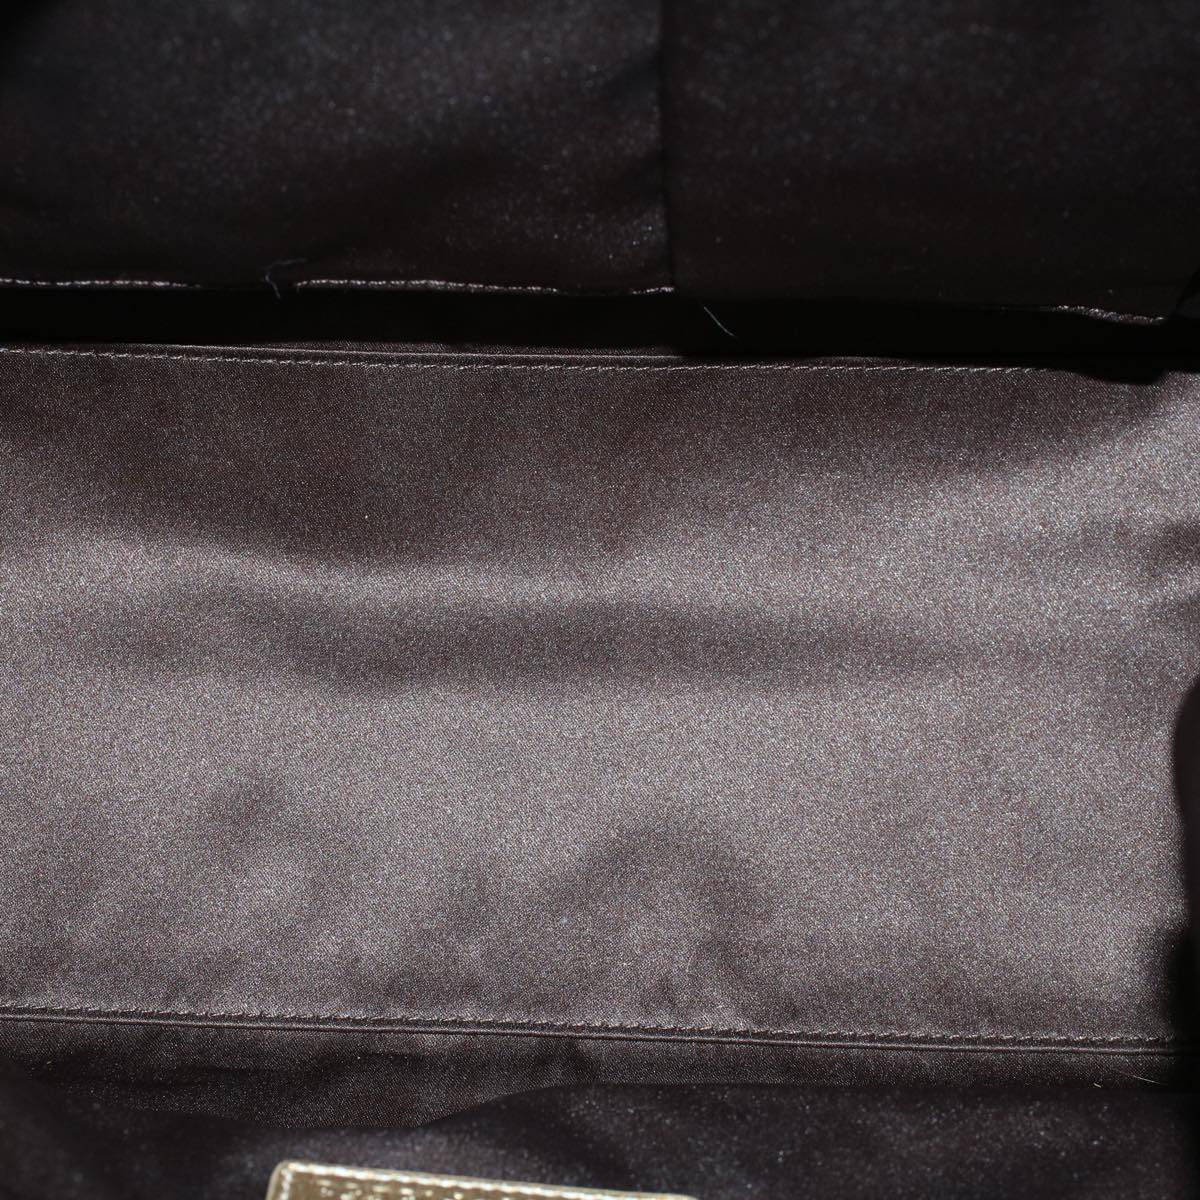 Coach Hand Bag Canvas Leather 2Set Beige Blue Auth am4604